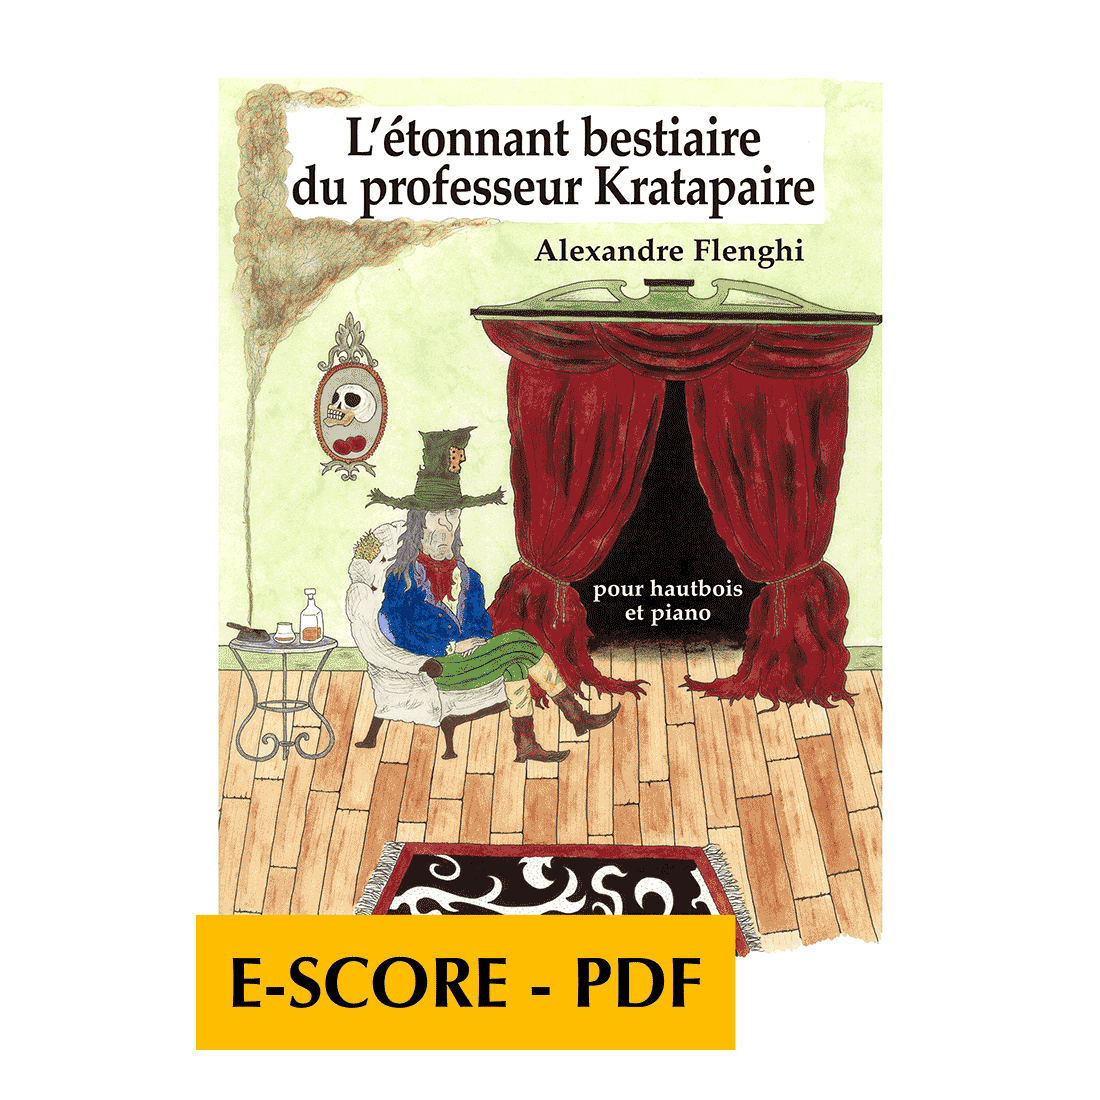 L'étonnant bestiaire du professeur Kratapaire für Oboe und Klavier - E-score PDF